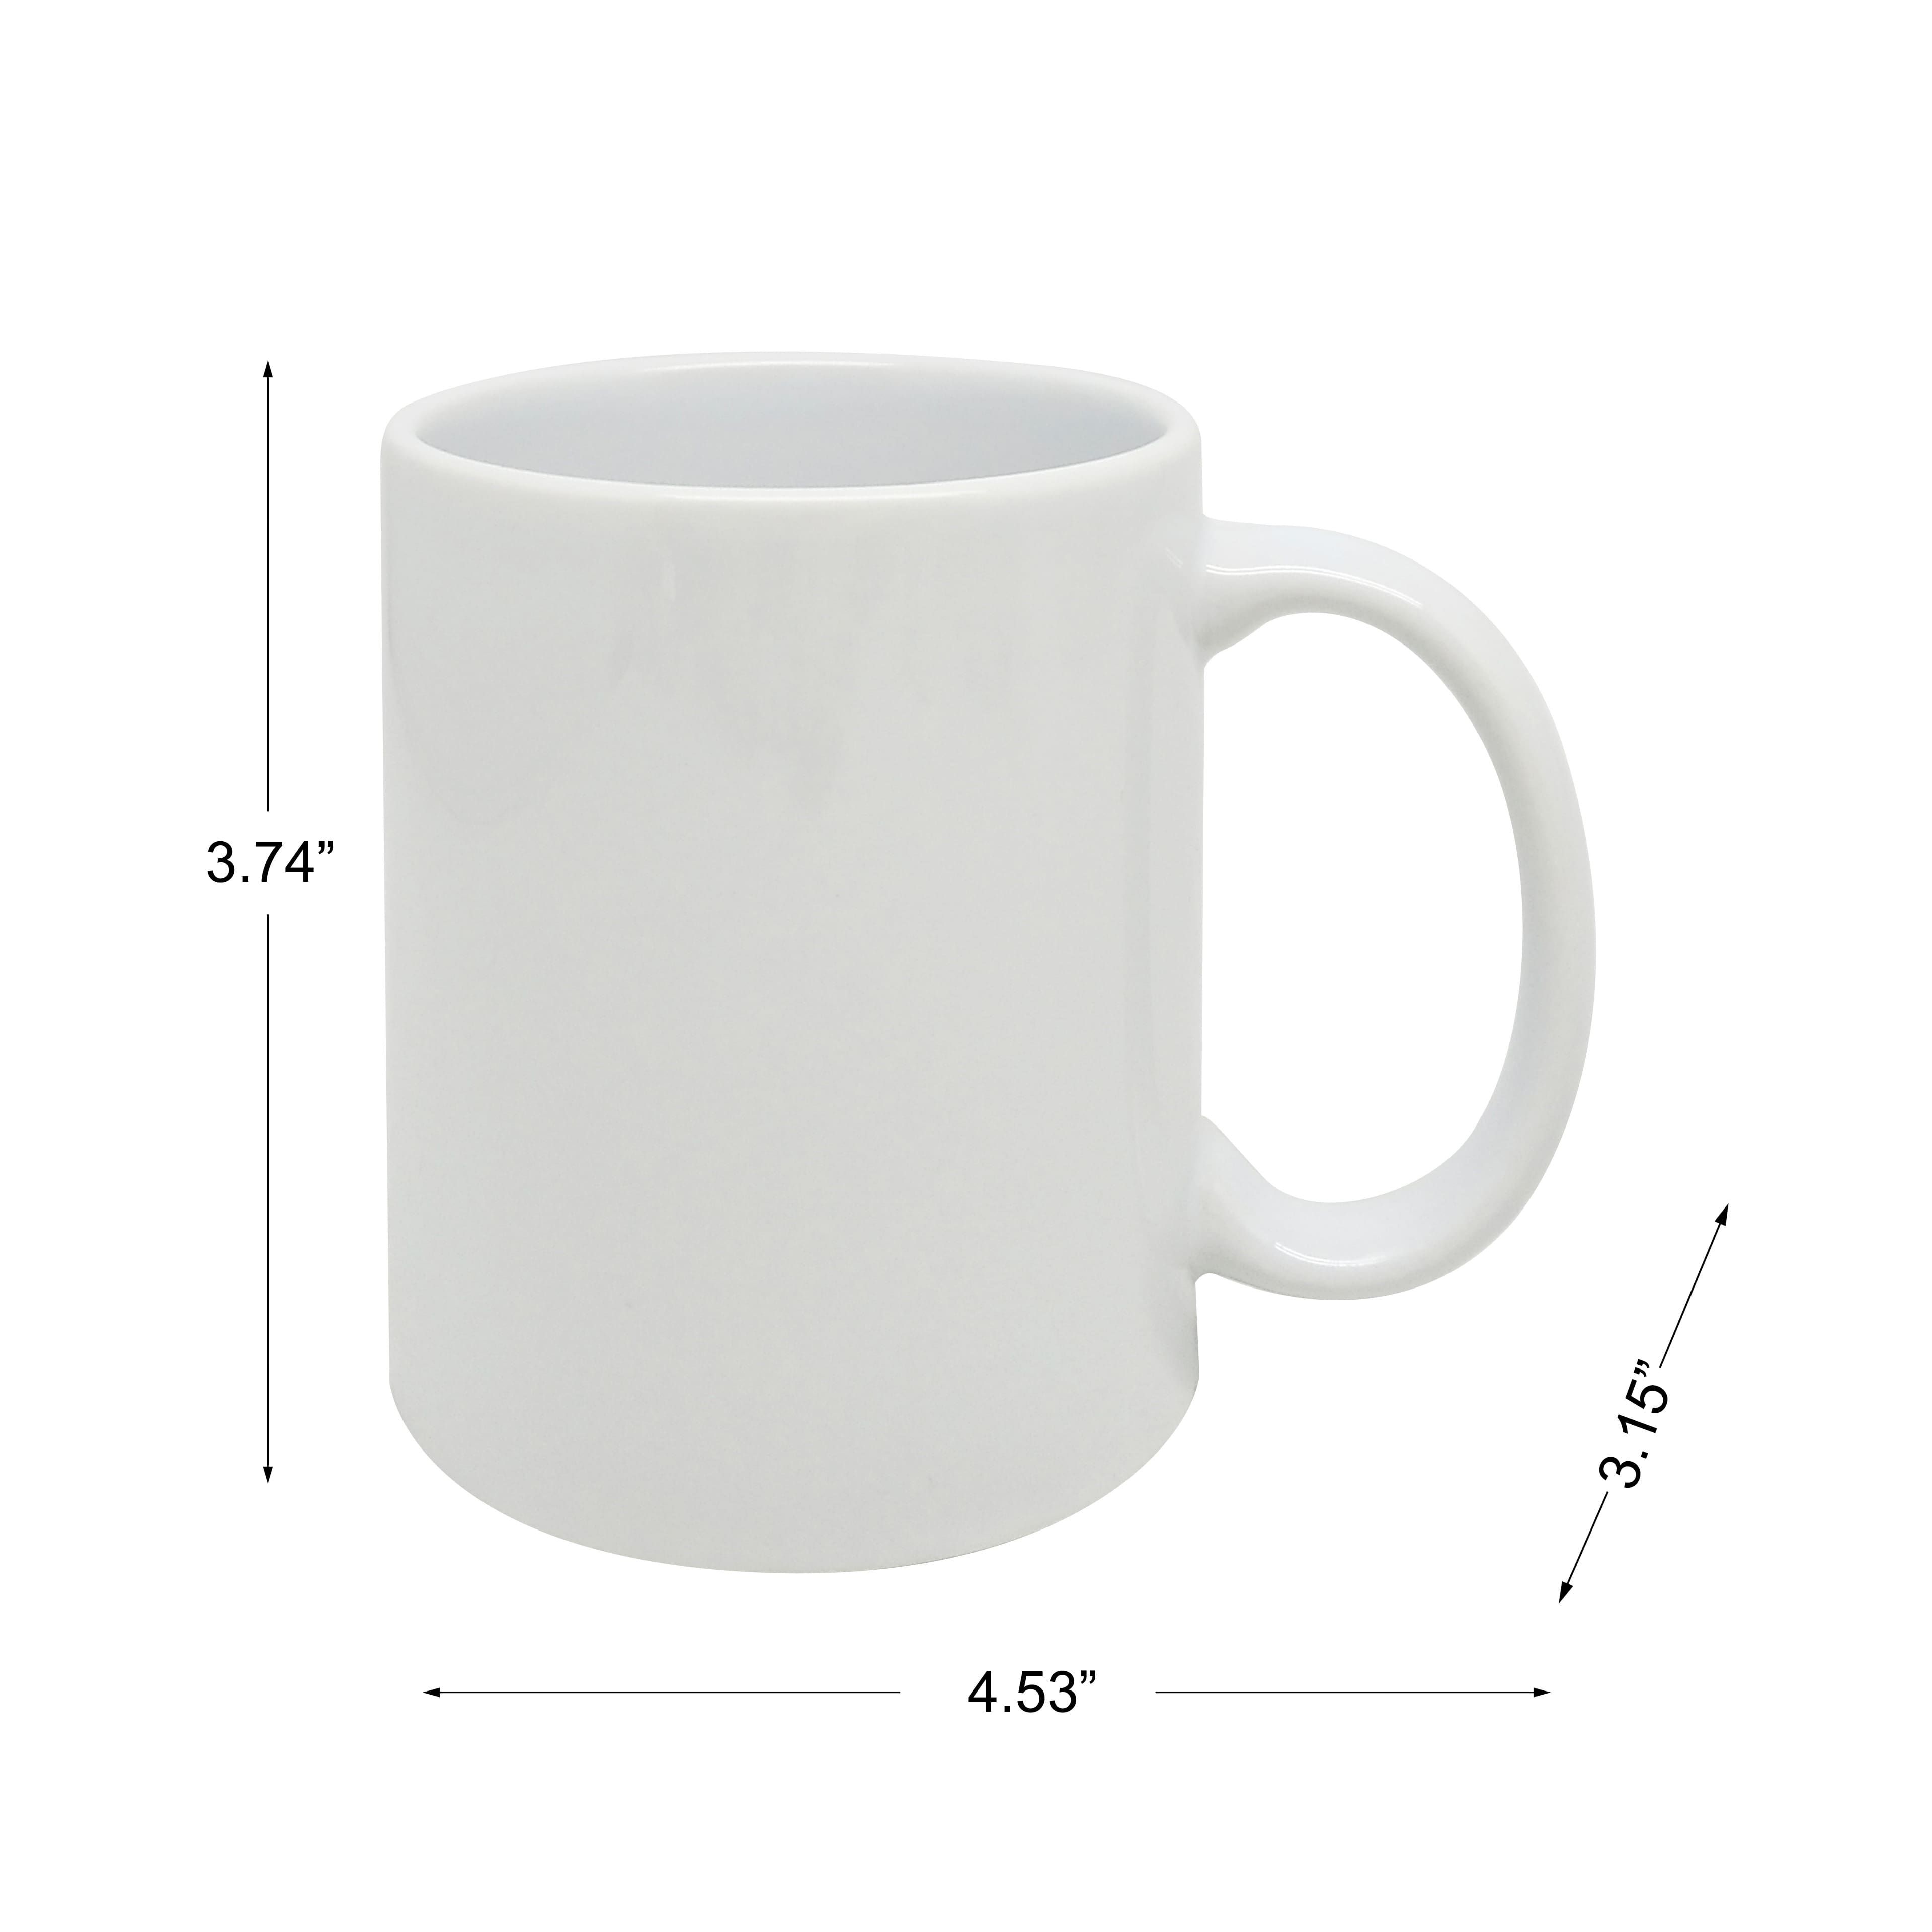 12oz. White Ceramic Sublimation Mugs, 6ct. by Make Market&#xAE;